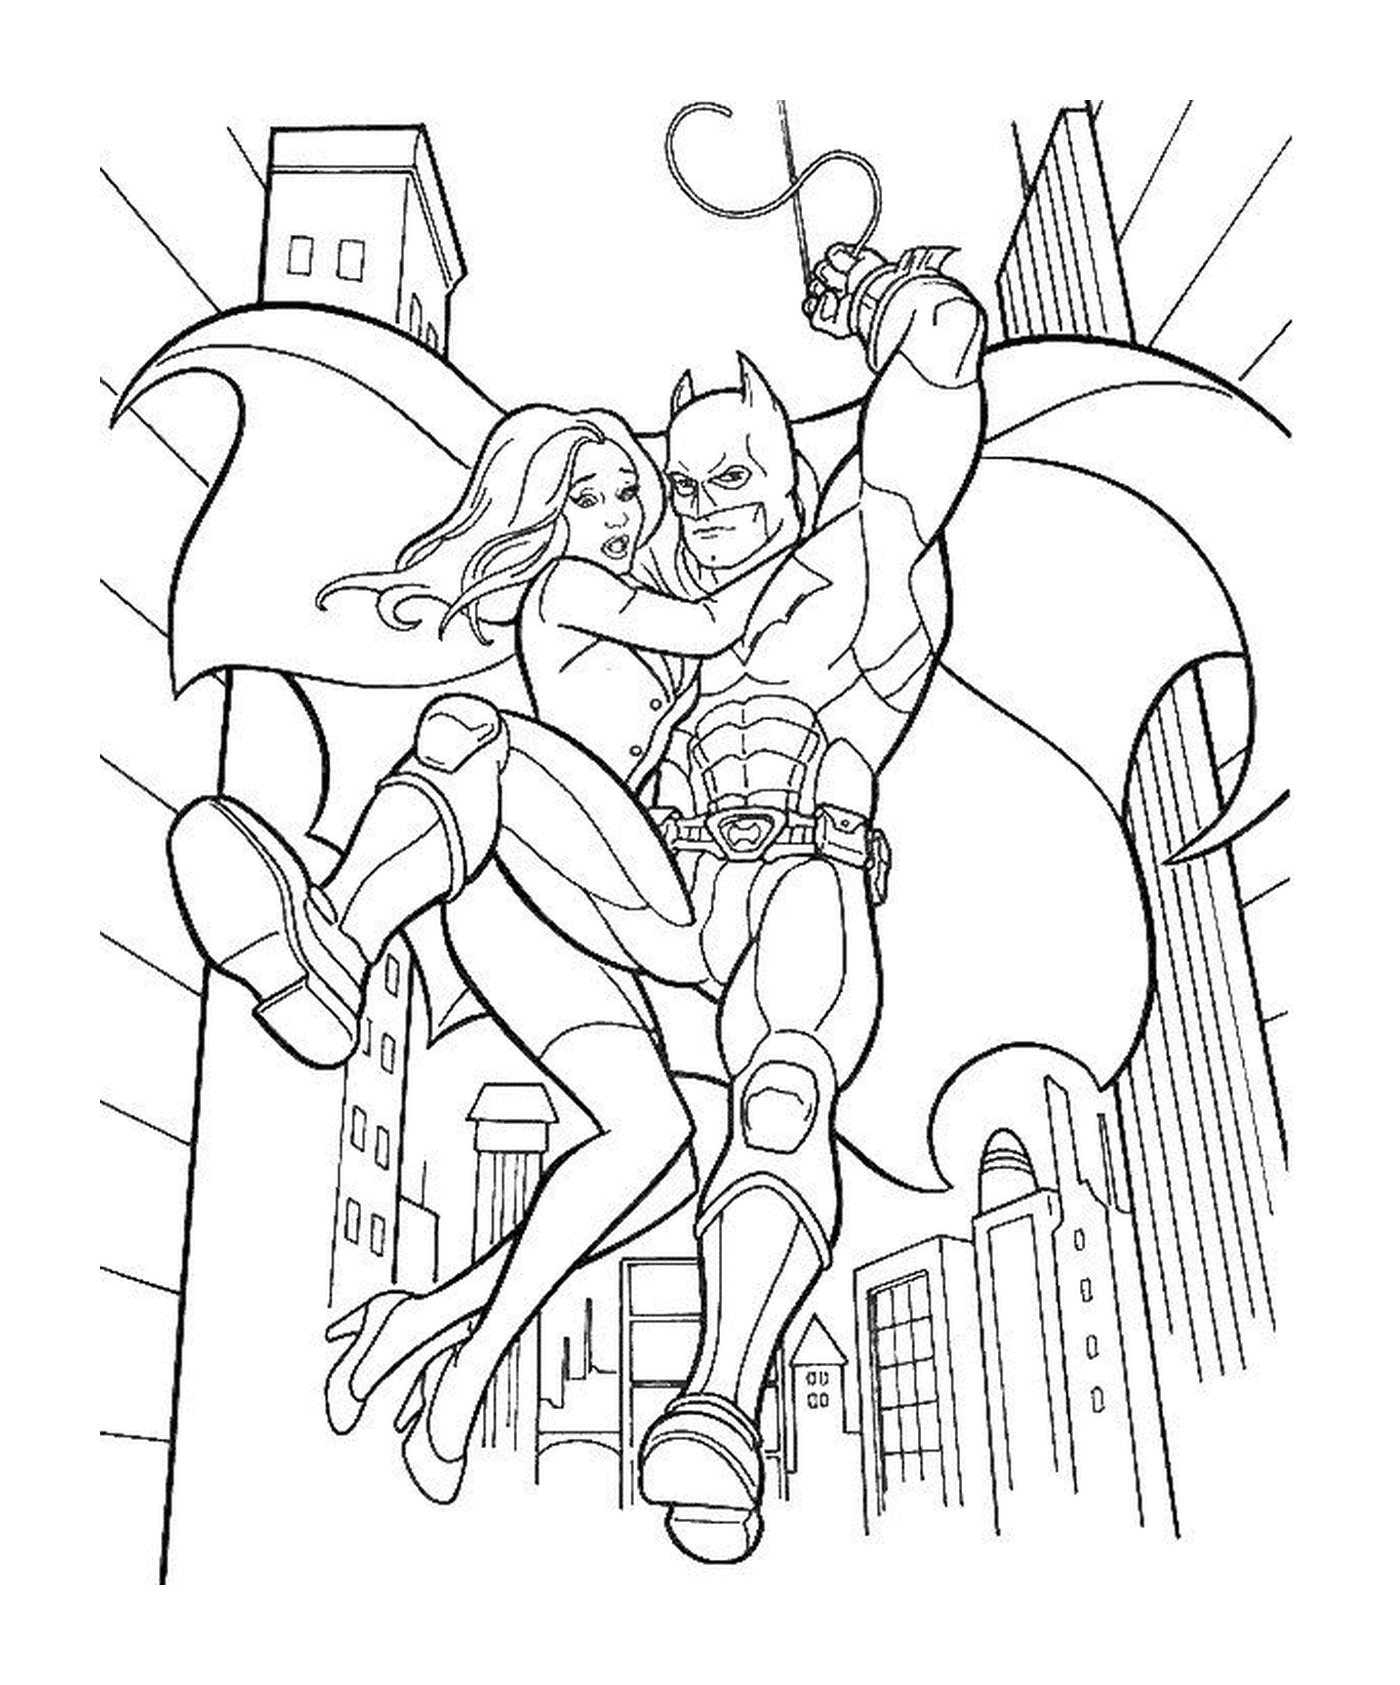   Batman sauve une femme dans la ville 